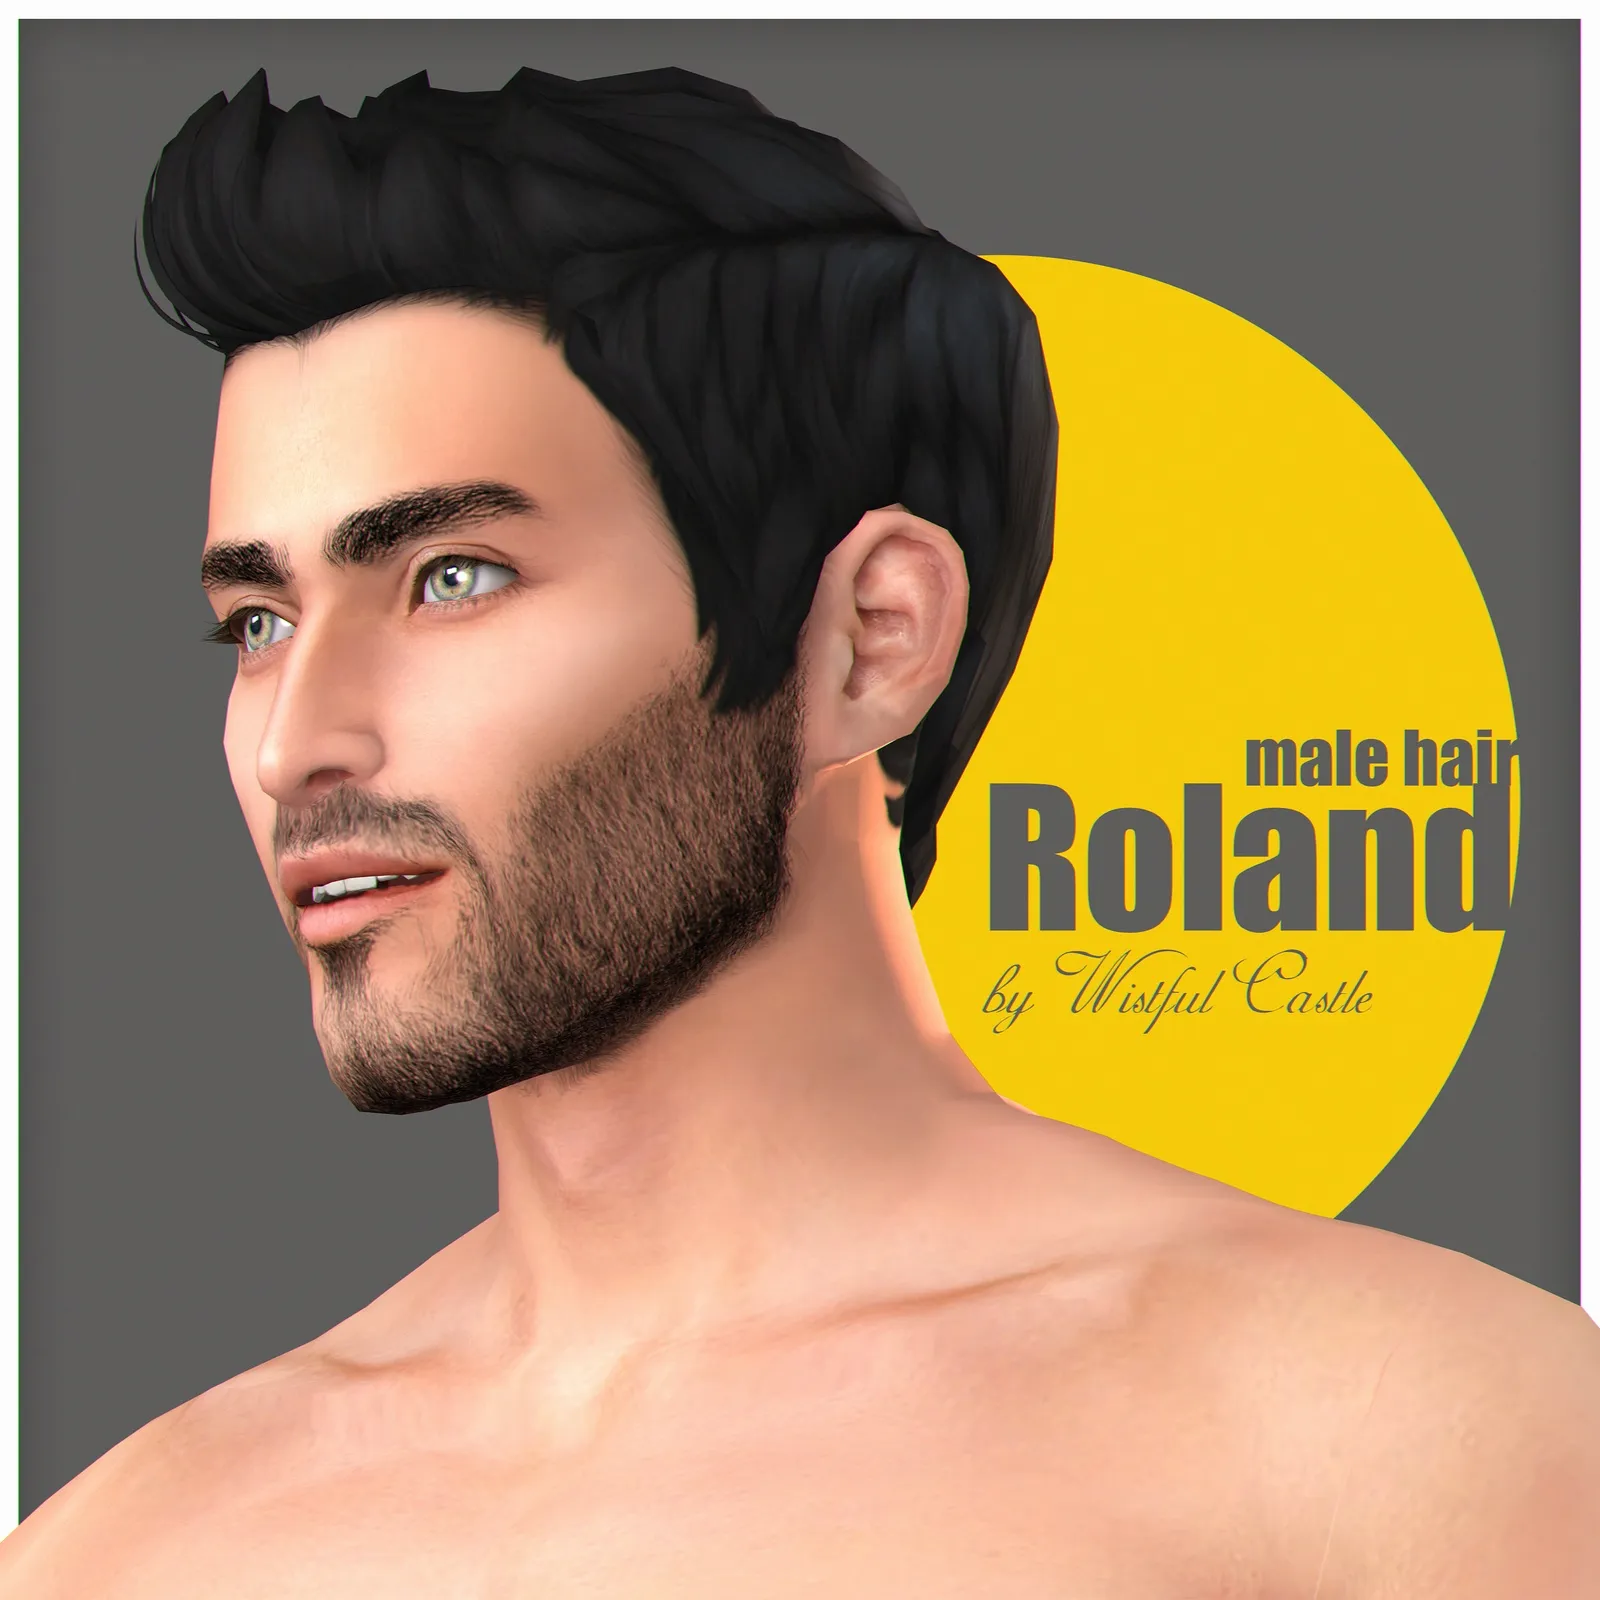 Roland (male hair)